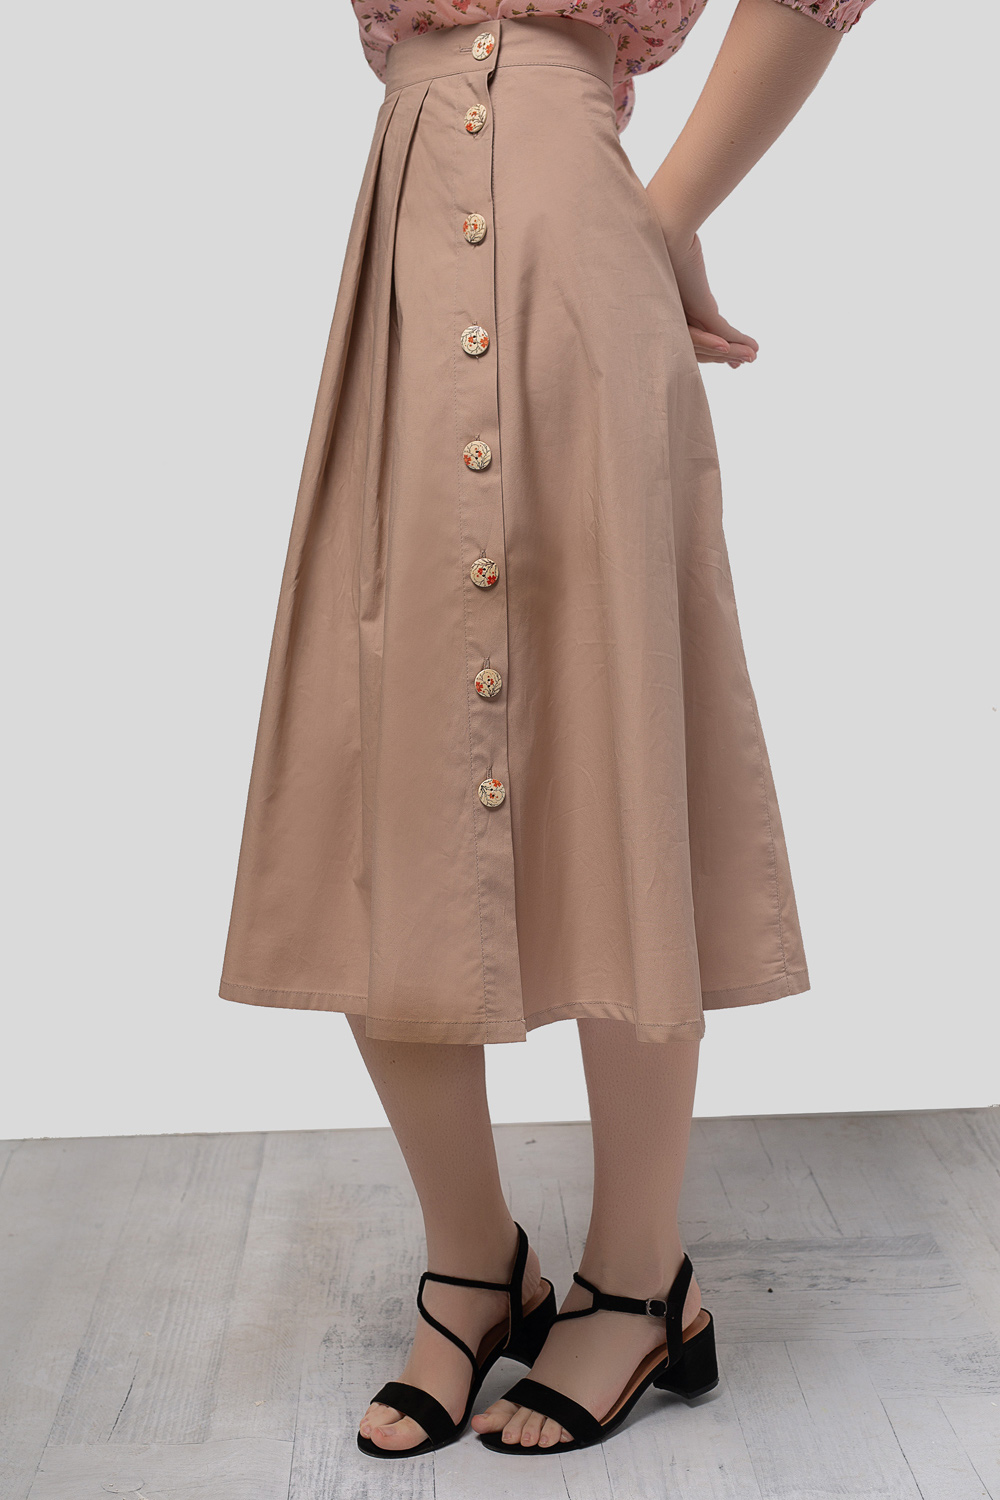 Hazelnut skirt with wooden buttons